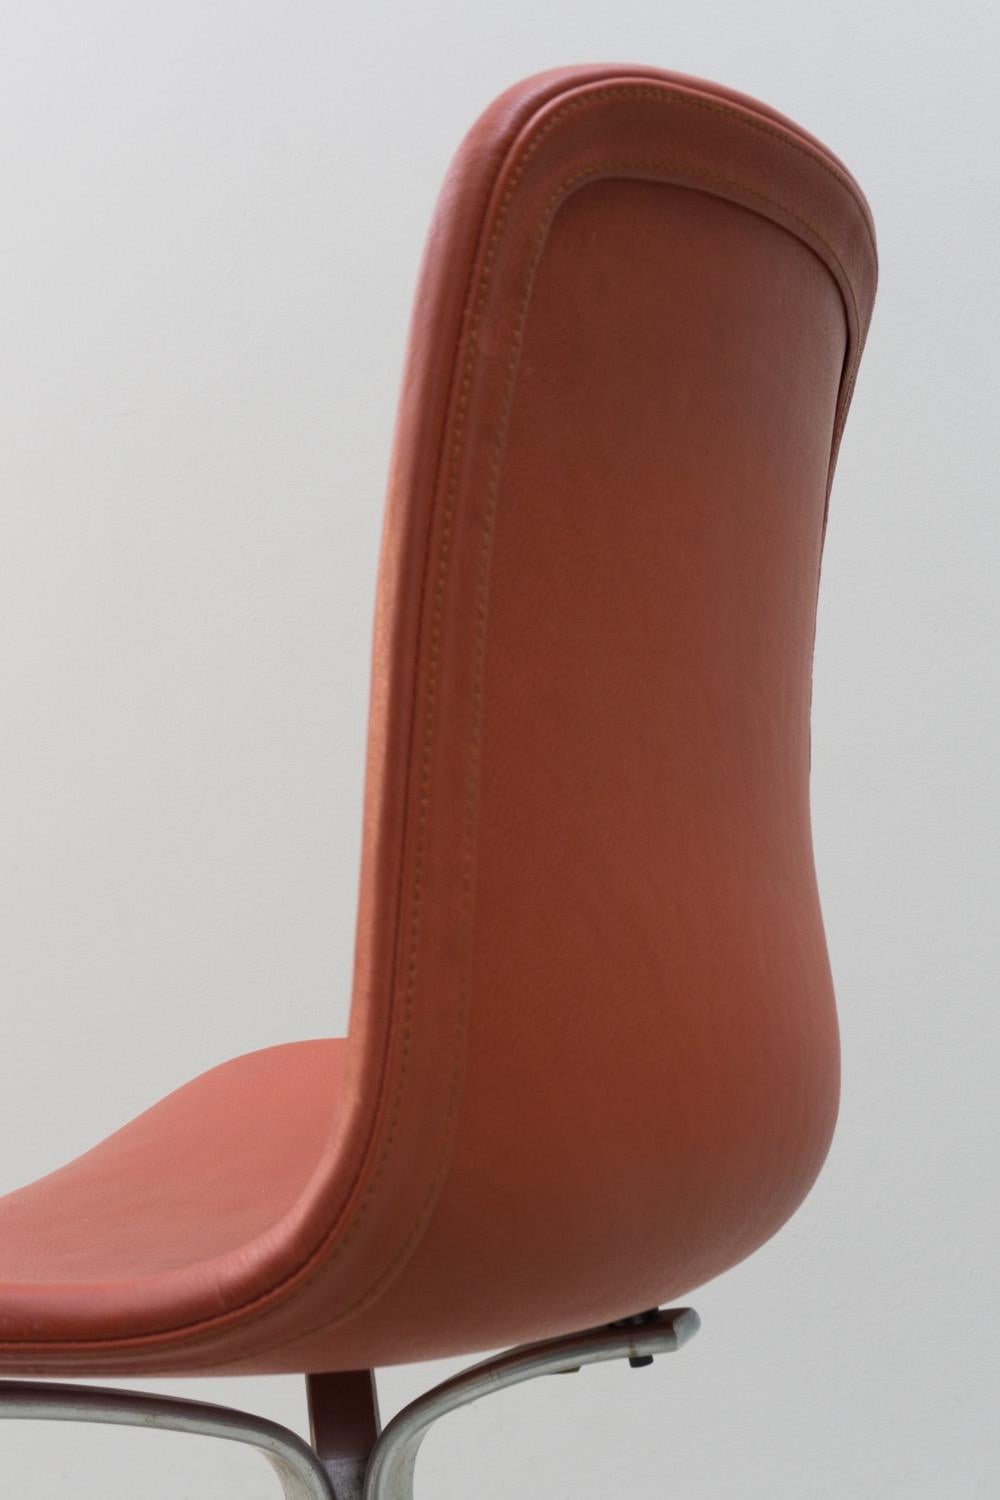 Chair 'PK 9' by Poul Kjaerholm, Fritz Hansen, Steel, Leather, 1960 For Sale 1